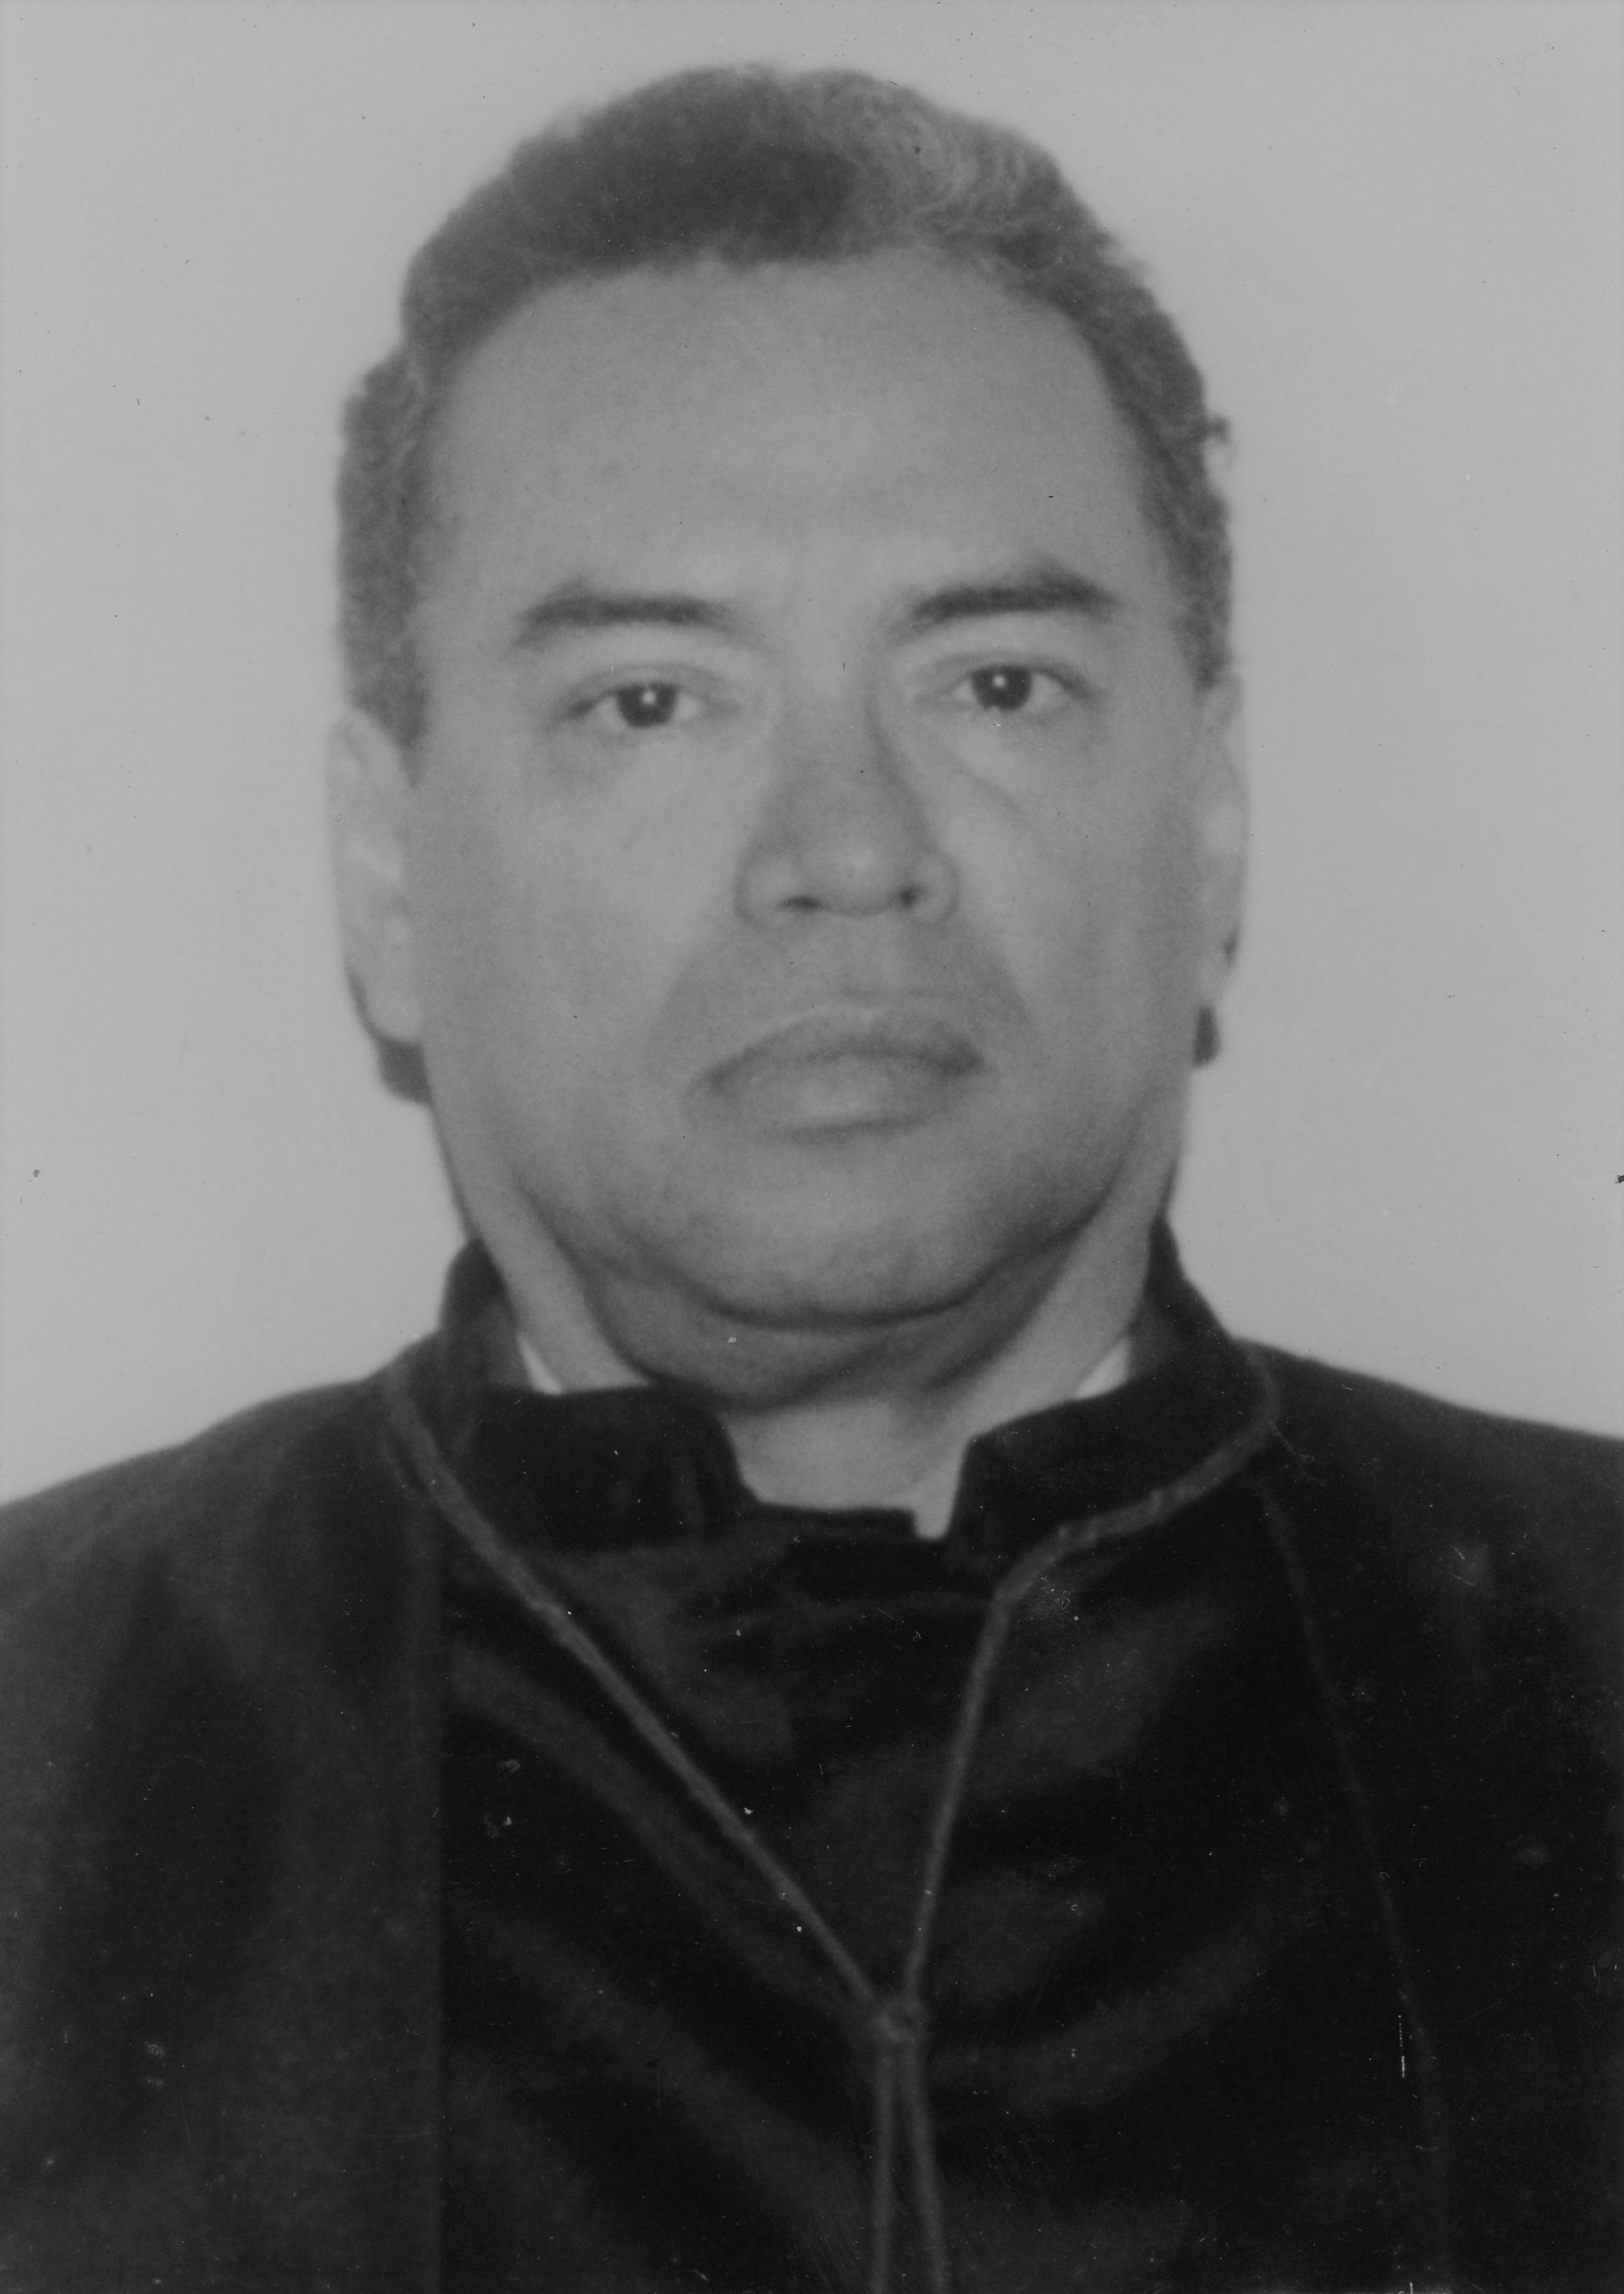 Fotografia em preto e branco, homem pardo, cabelo preto, usando toga